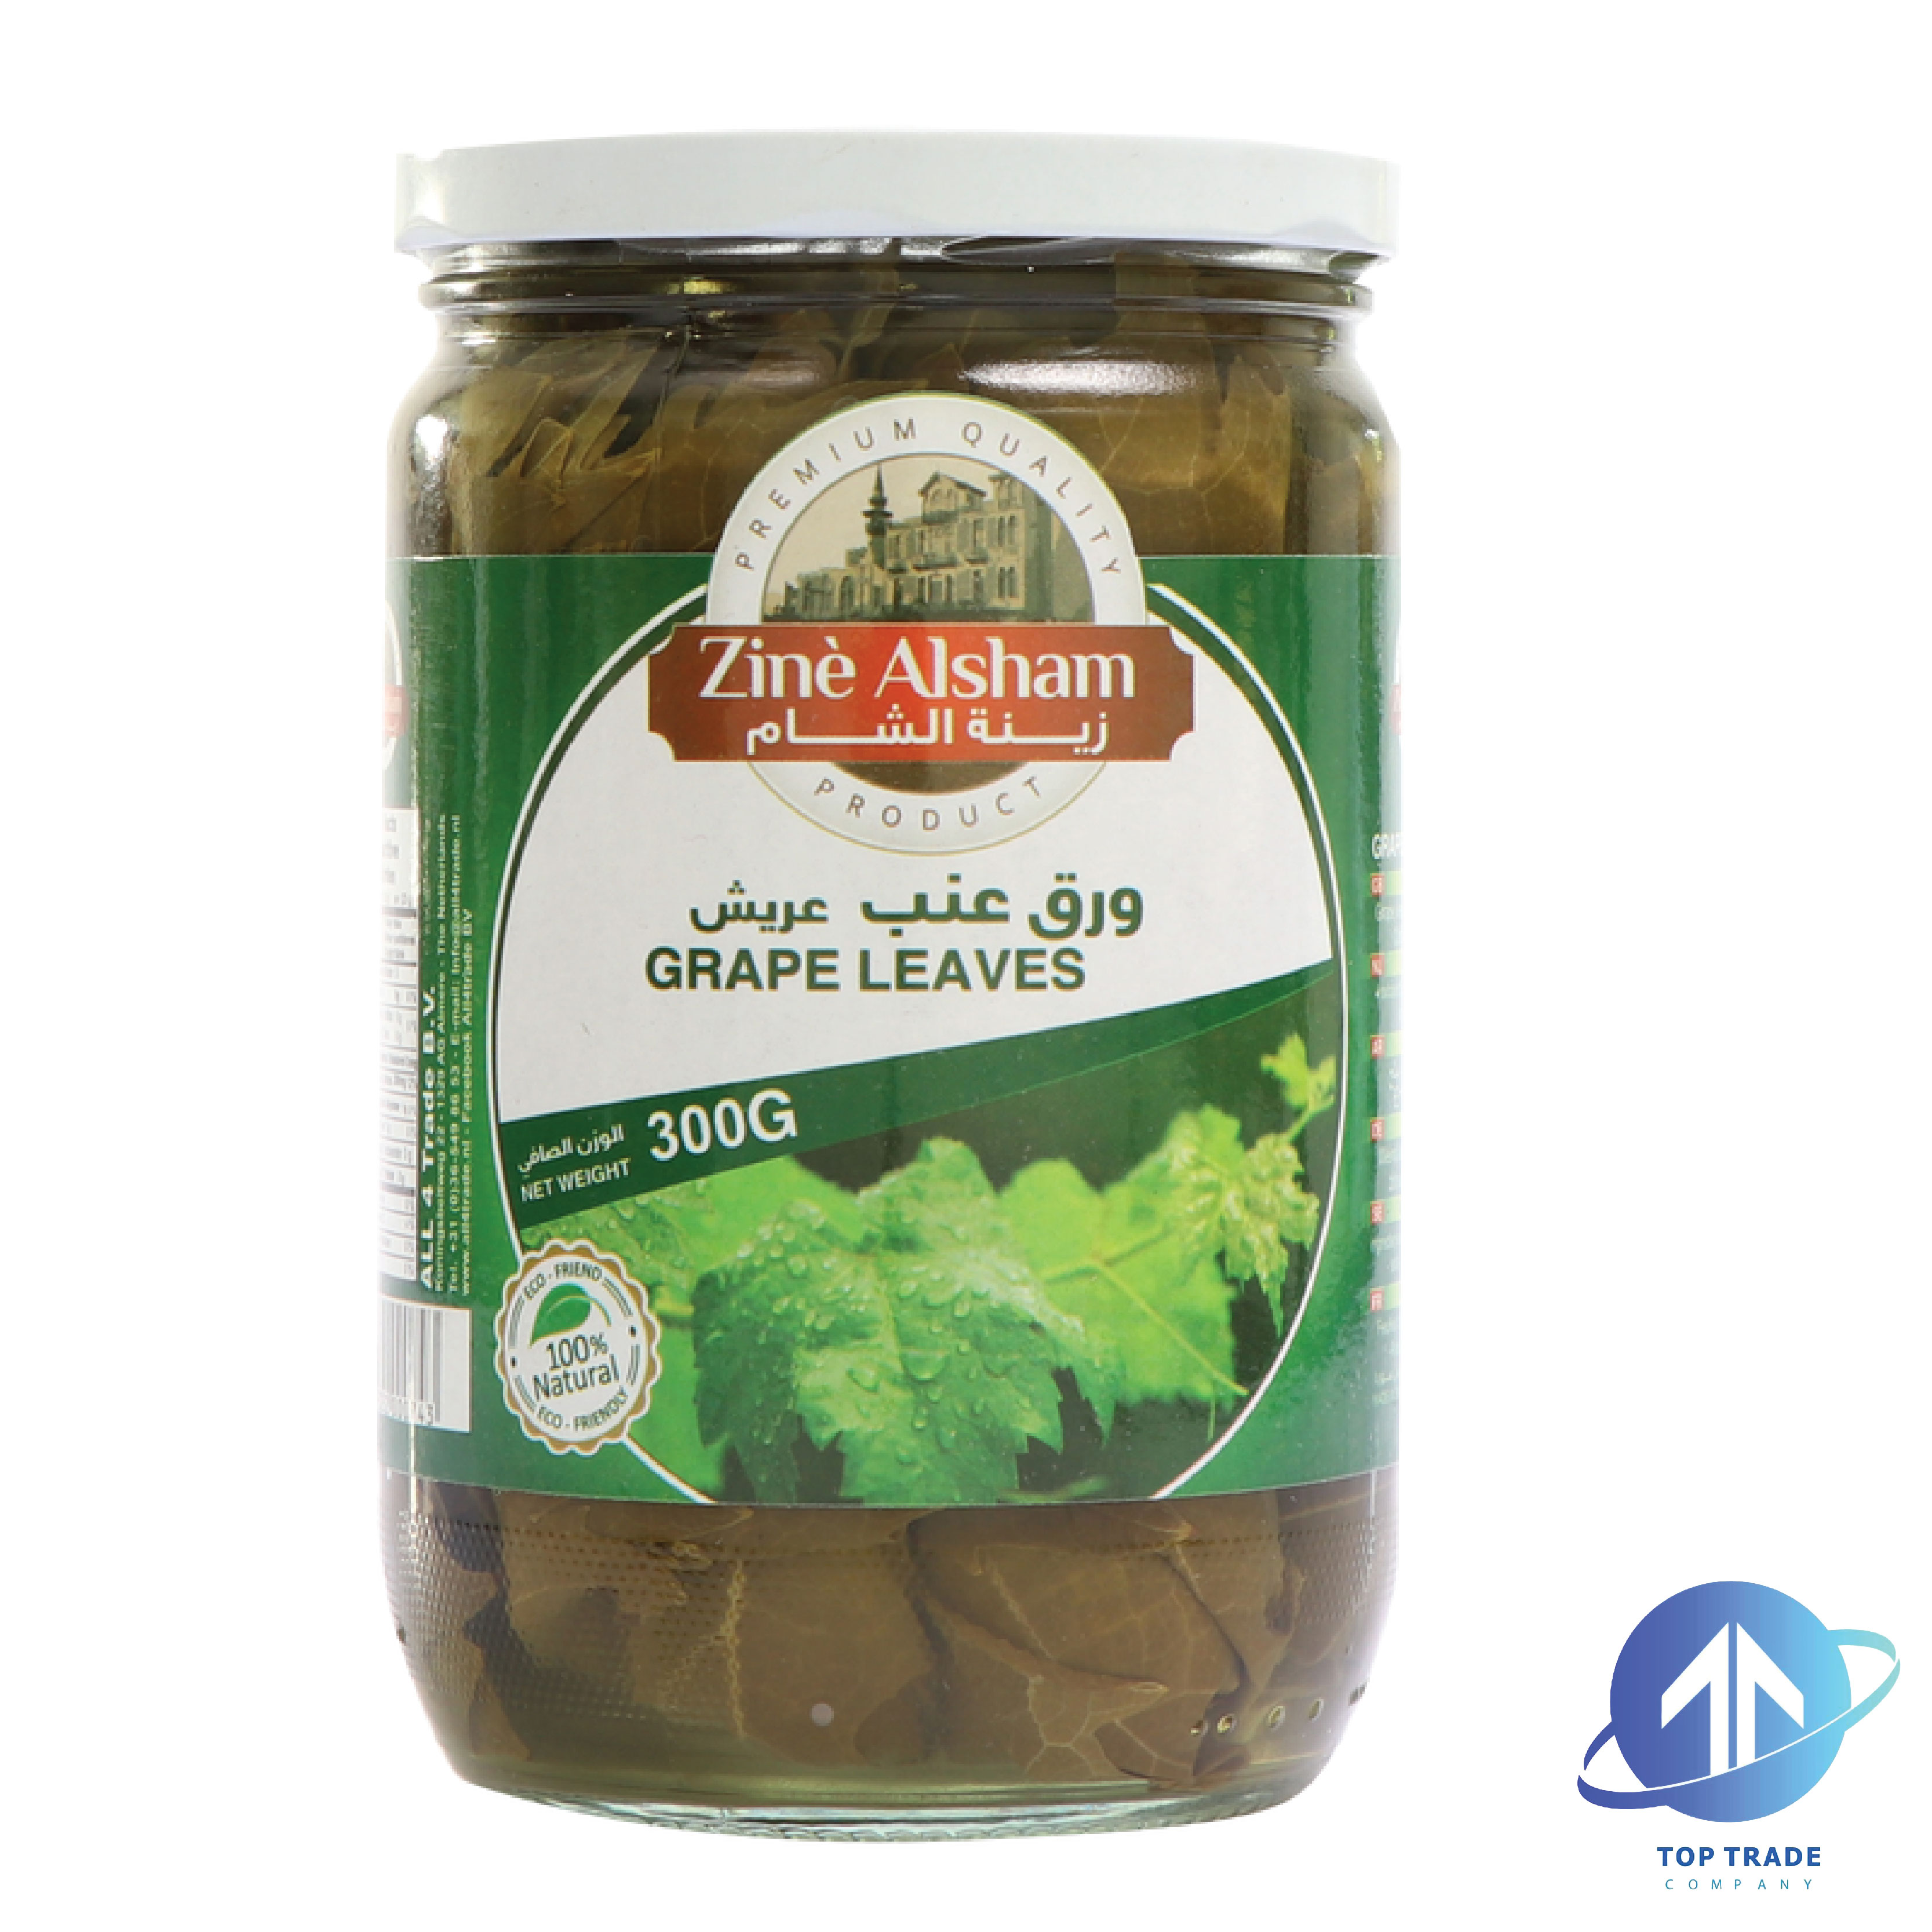 Zine alsham Grape leaves 600gr